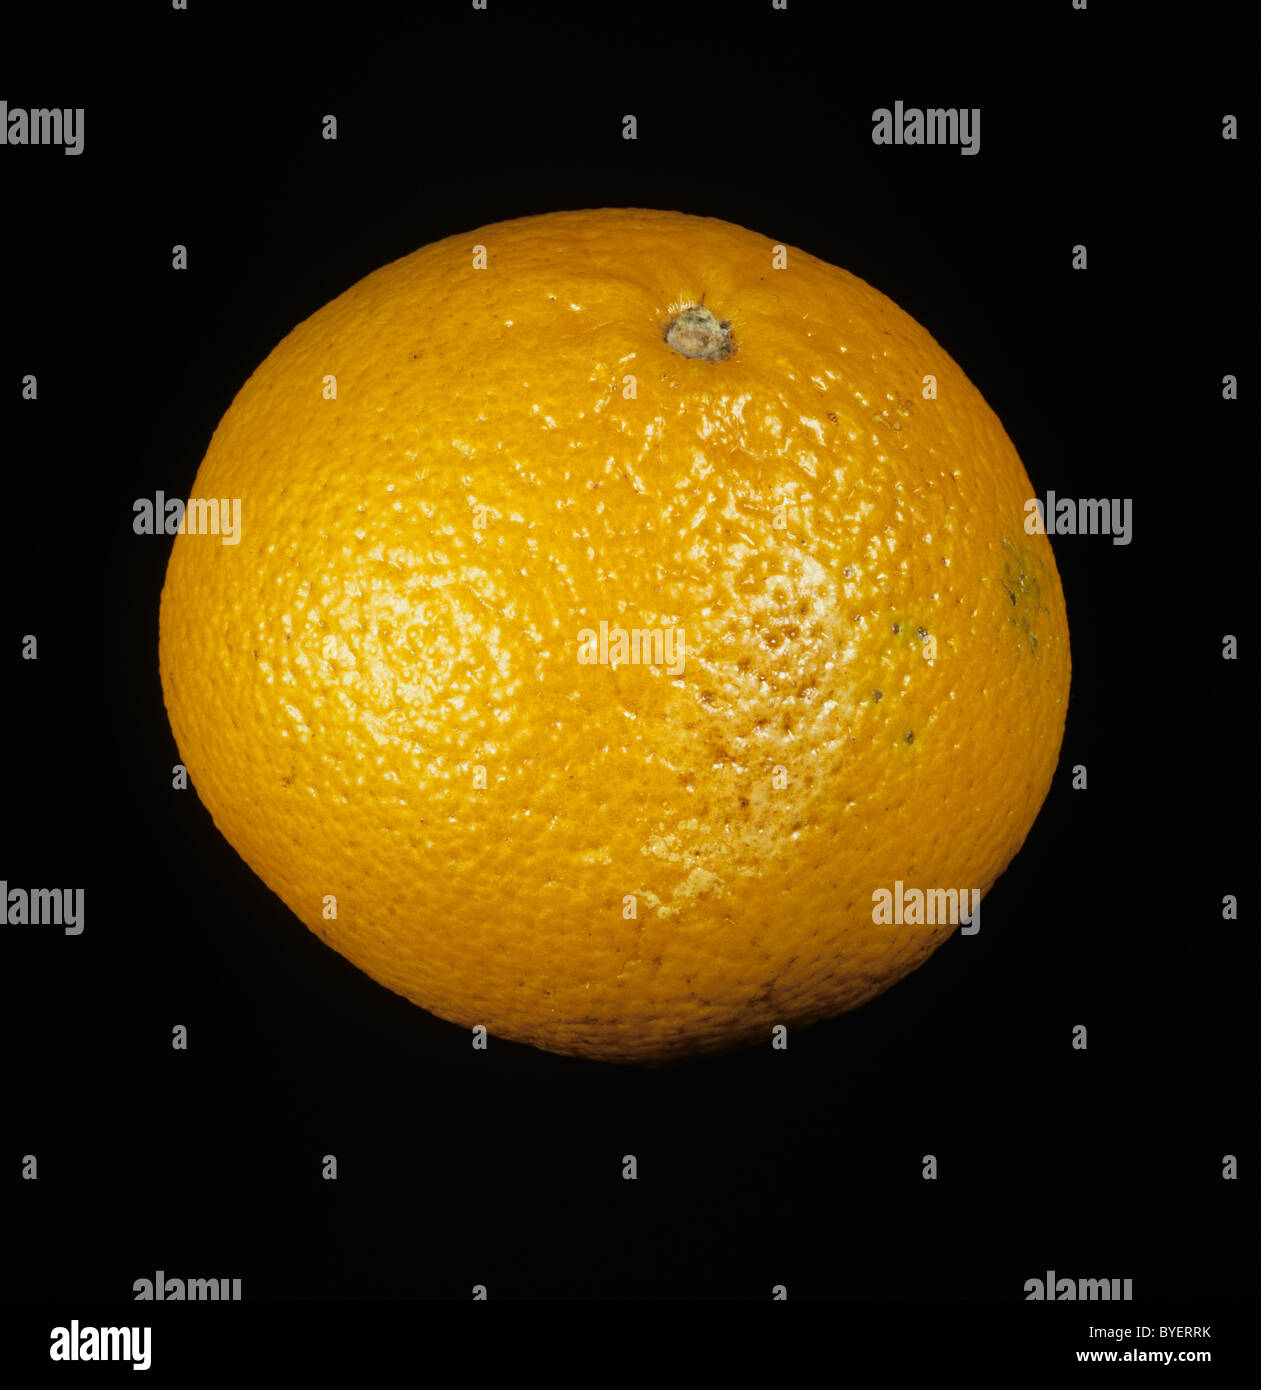 Gesamten Zitrusfrucht orange Sorte Ortanique Stockfoto